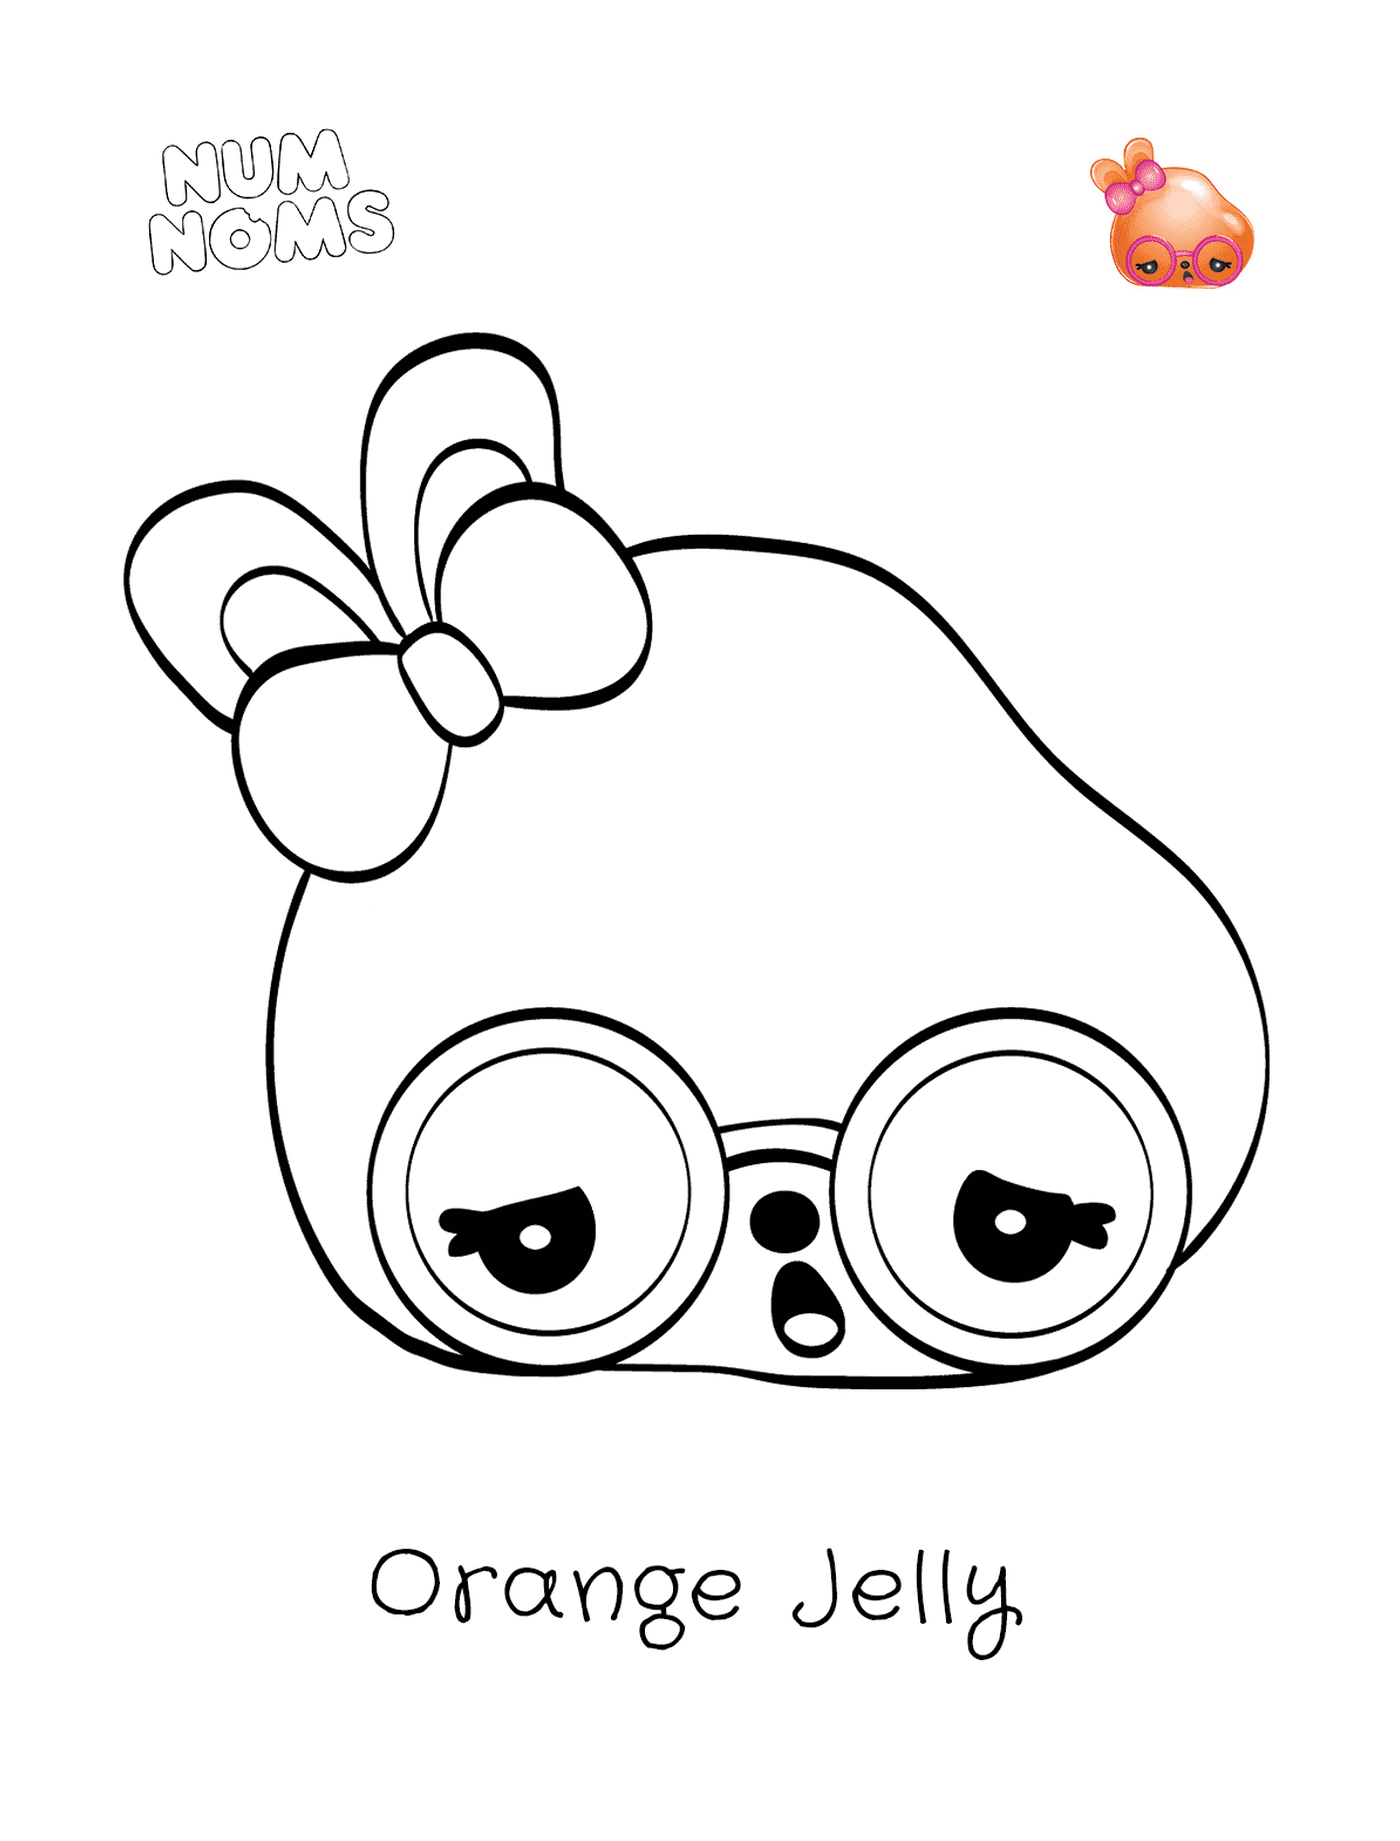  Jelly laranja, um personagem engraçado 